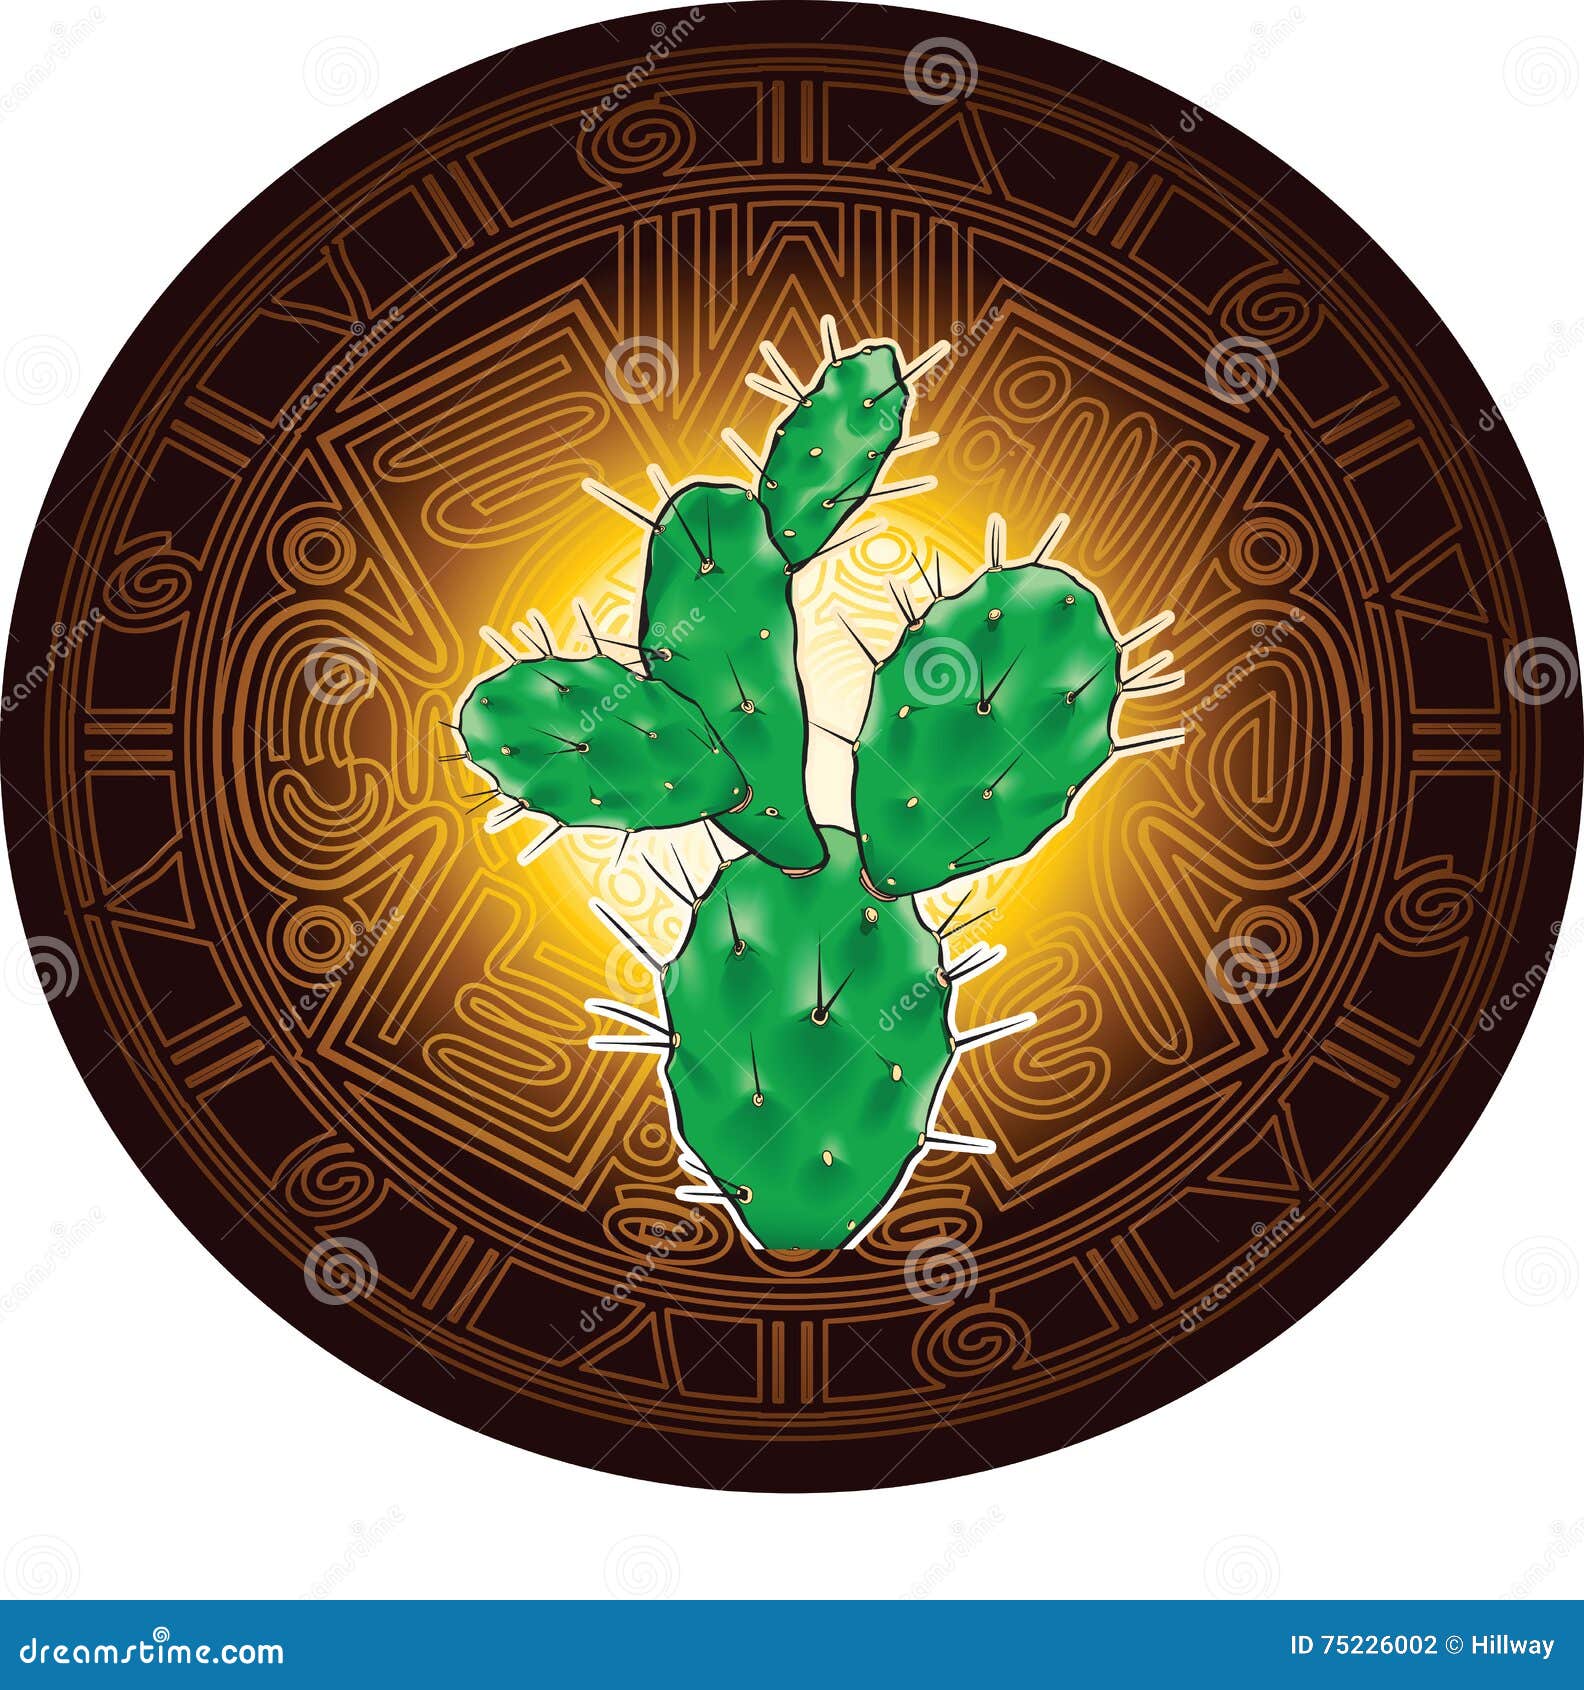 在古老玛雅日历的风格化图象背景的仙人掌向量例证 插画包括有在古老玛雅日历的风格化图象背景的仙人掌 75226002